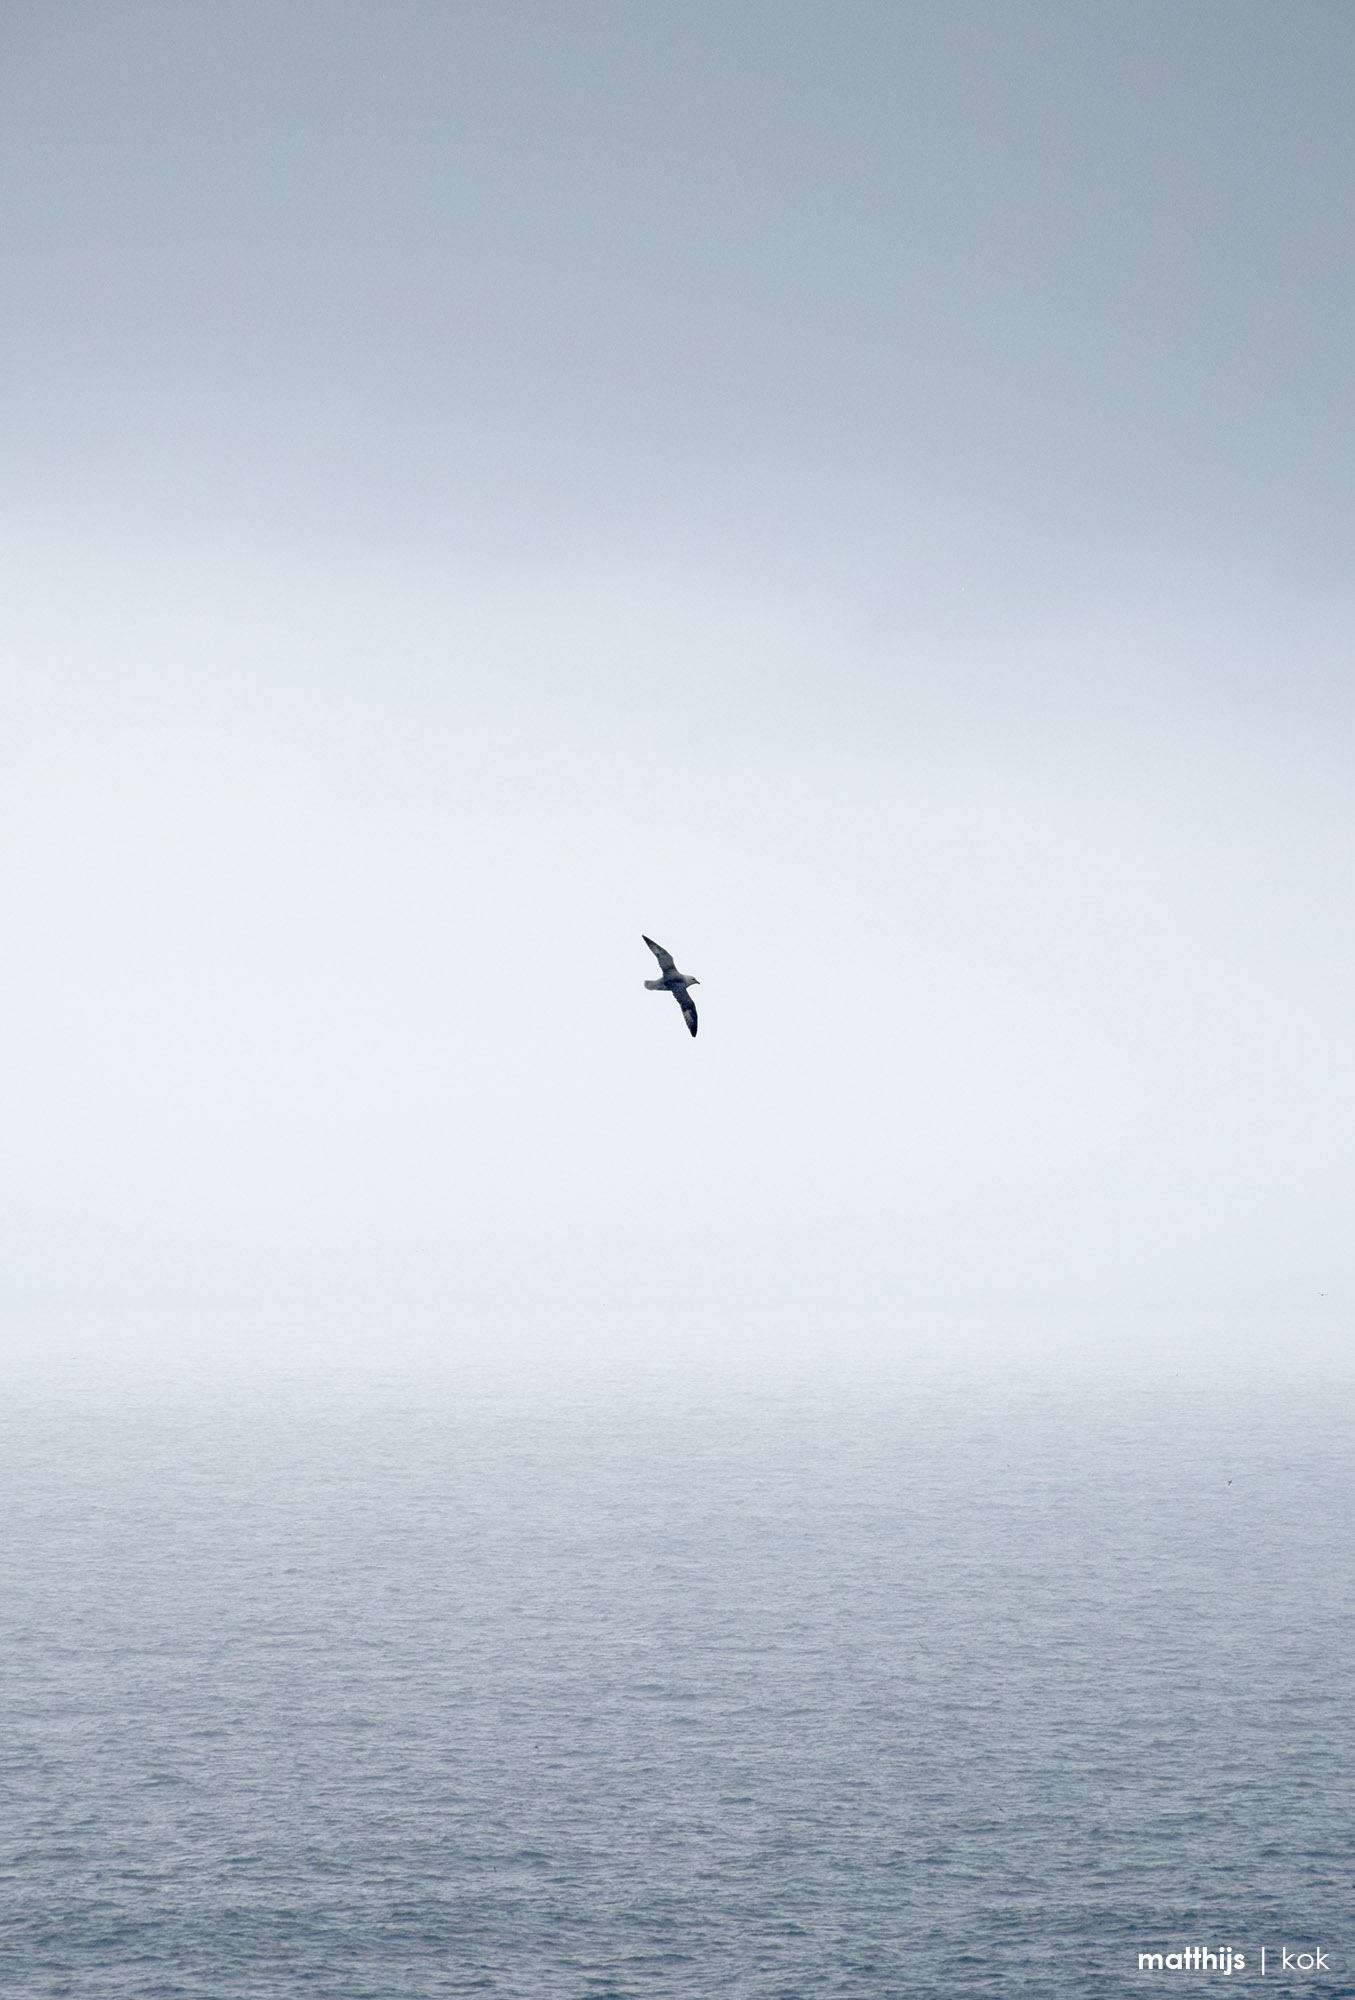 Atlantic Ocean, Faroe Islands | Photo by Matthijs Kok